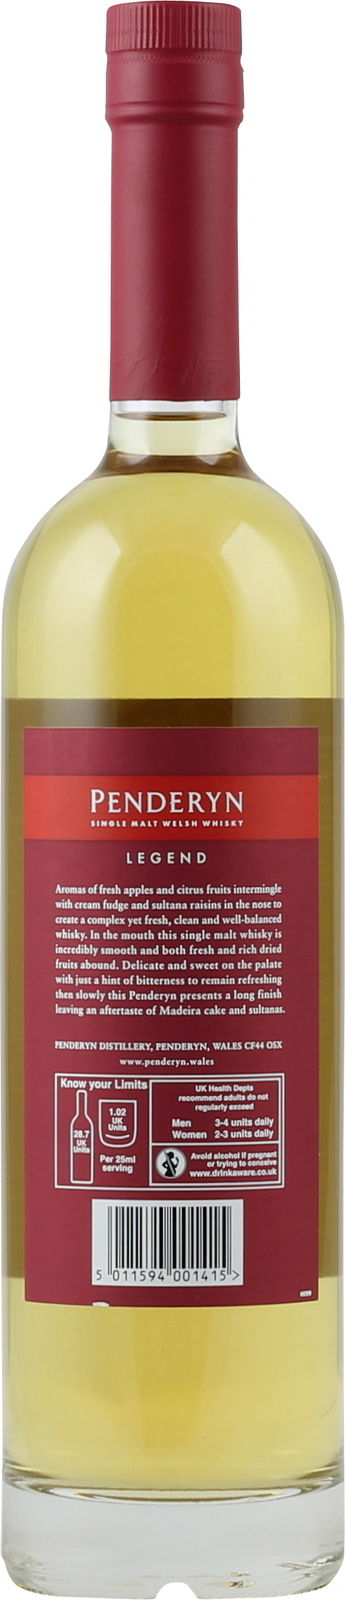 Welsh 0,7 Single Legend Liter Malt Penderyn 41% Whiskey